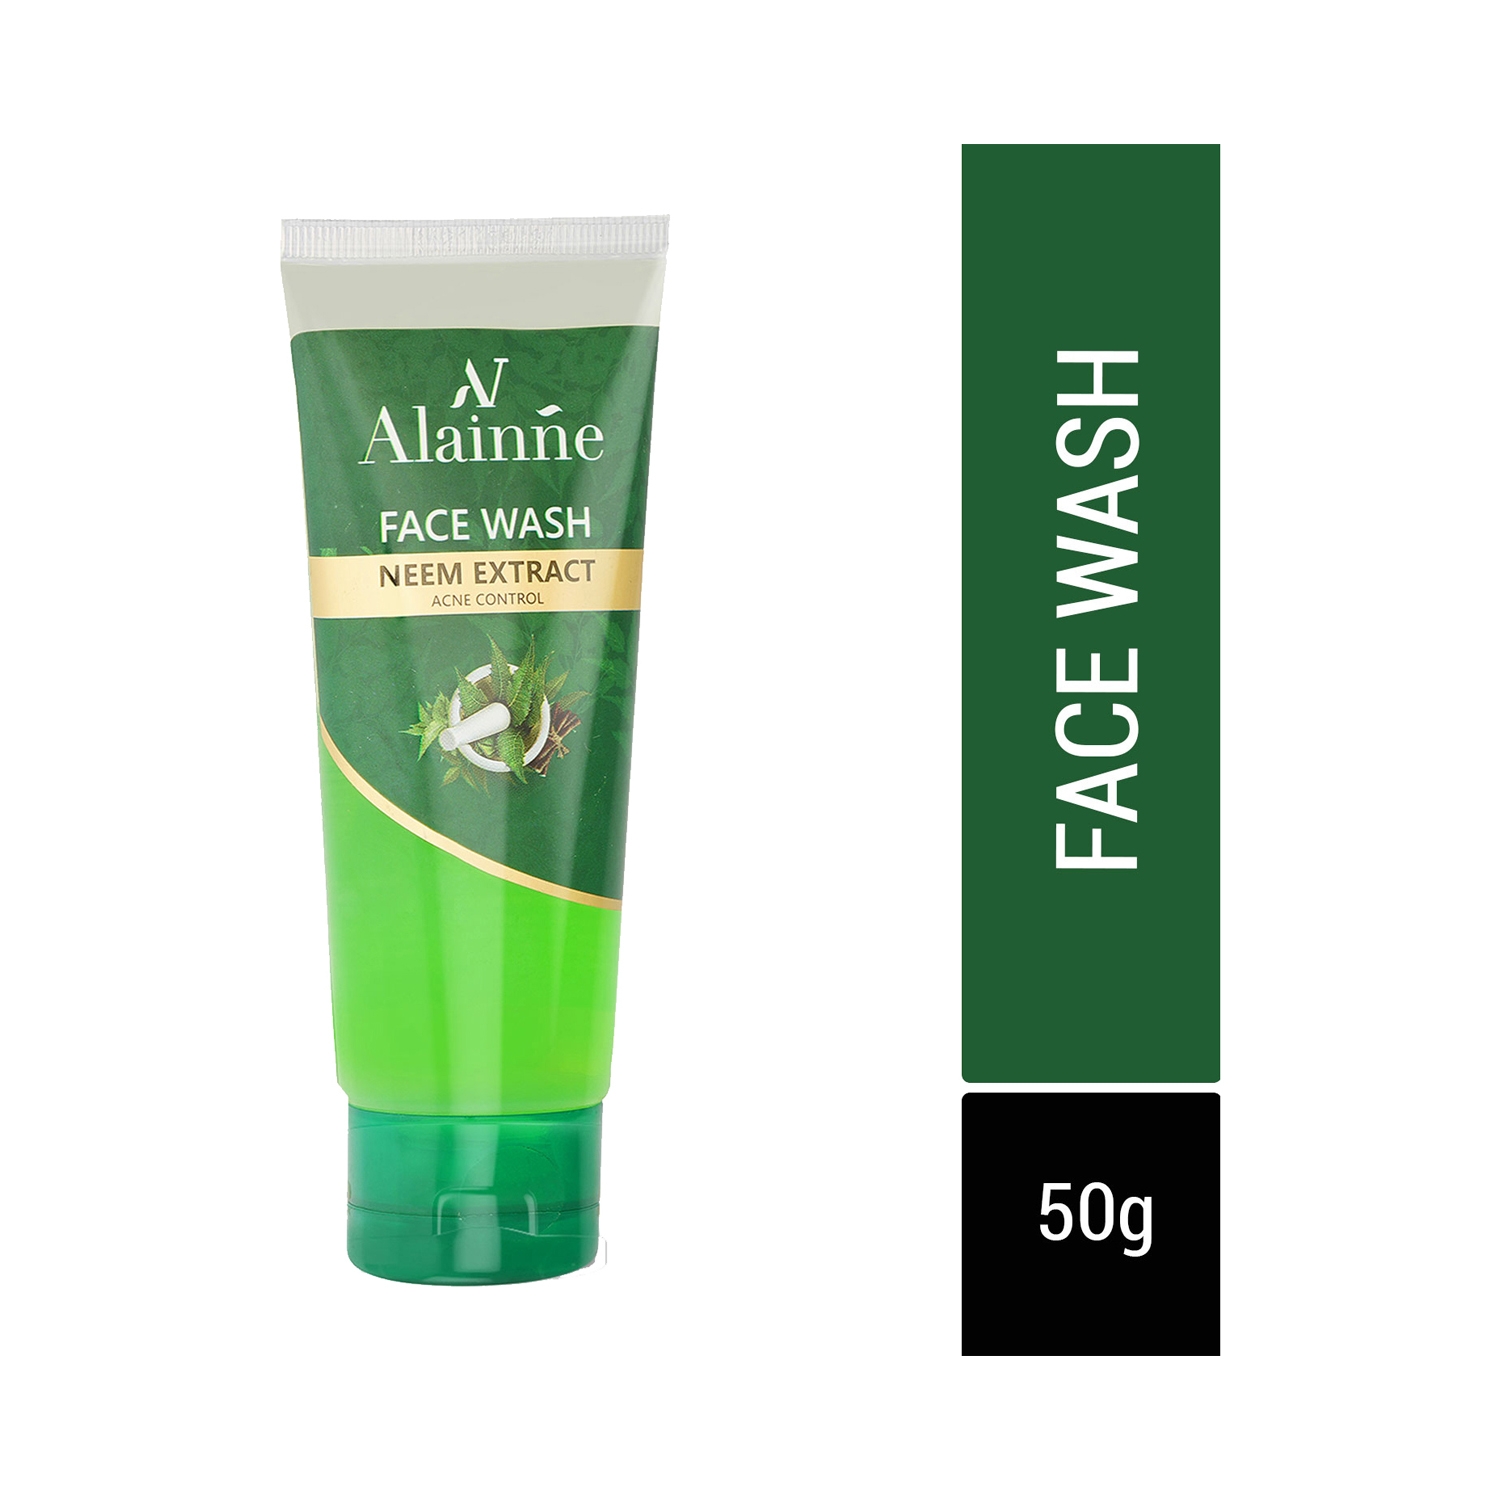 Alainne | Alainne Neem Extract Acne Control Facewash - (50g)